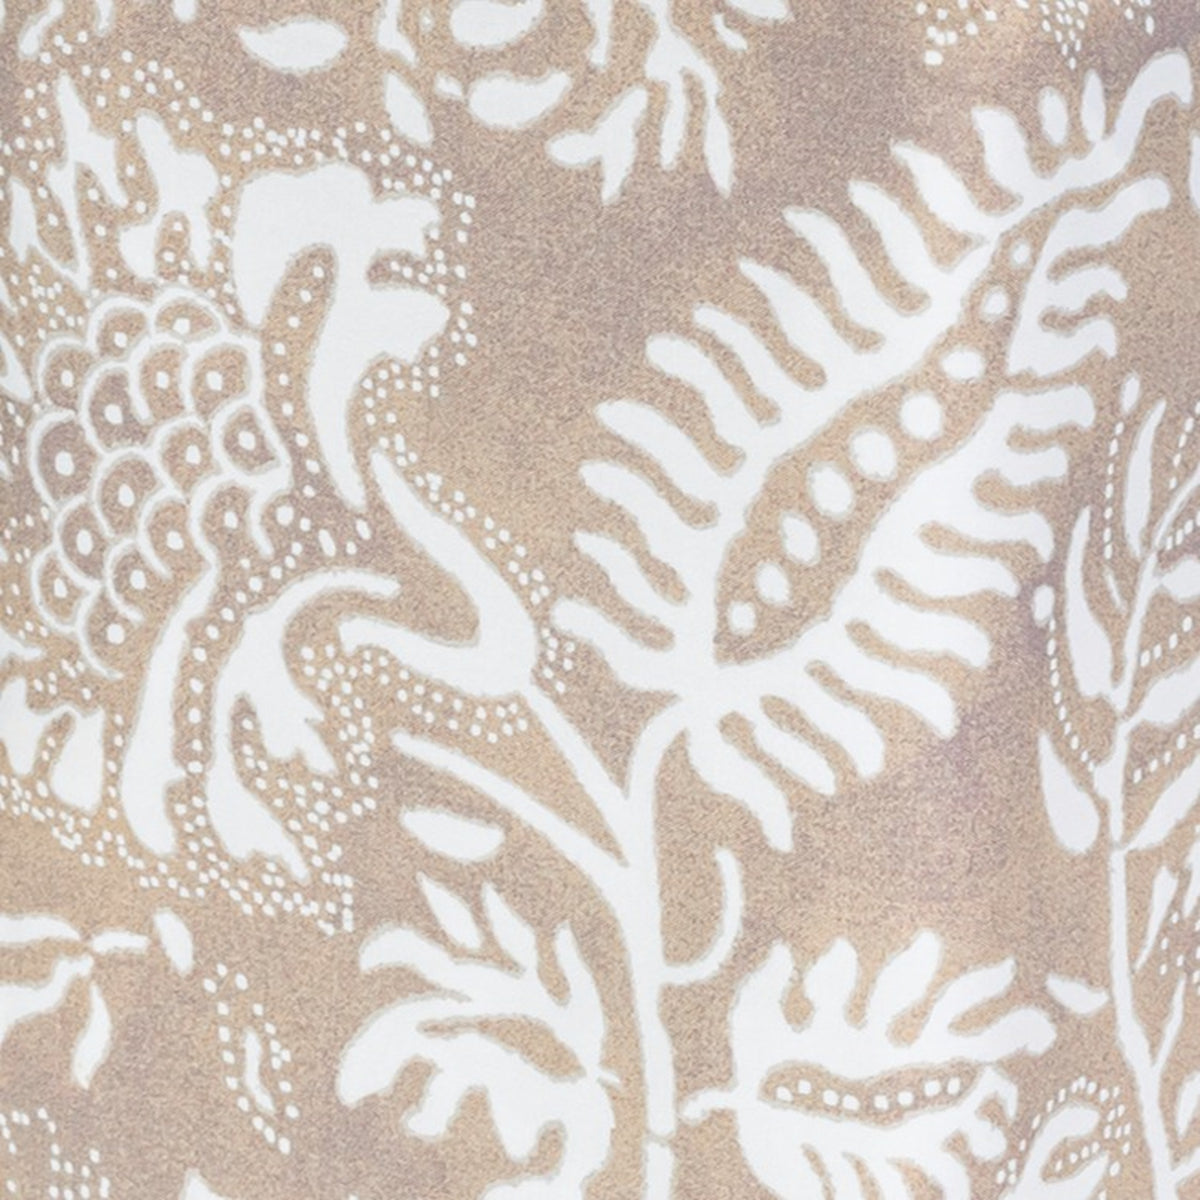 Swatch Sample of Matouk Granada Tissue Box Cover in Dune Color